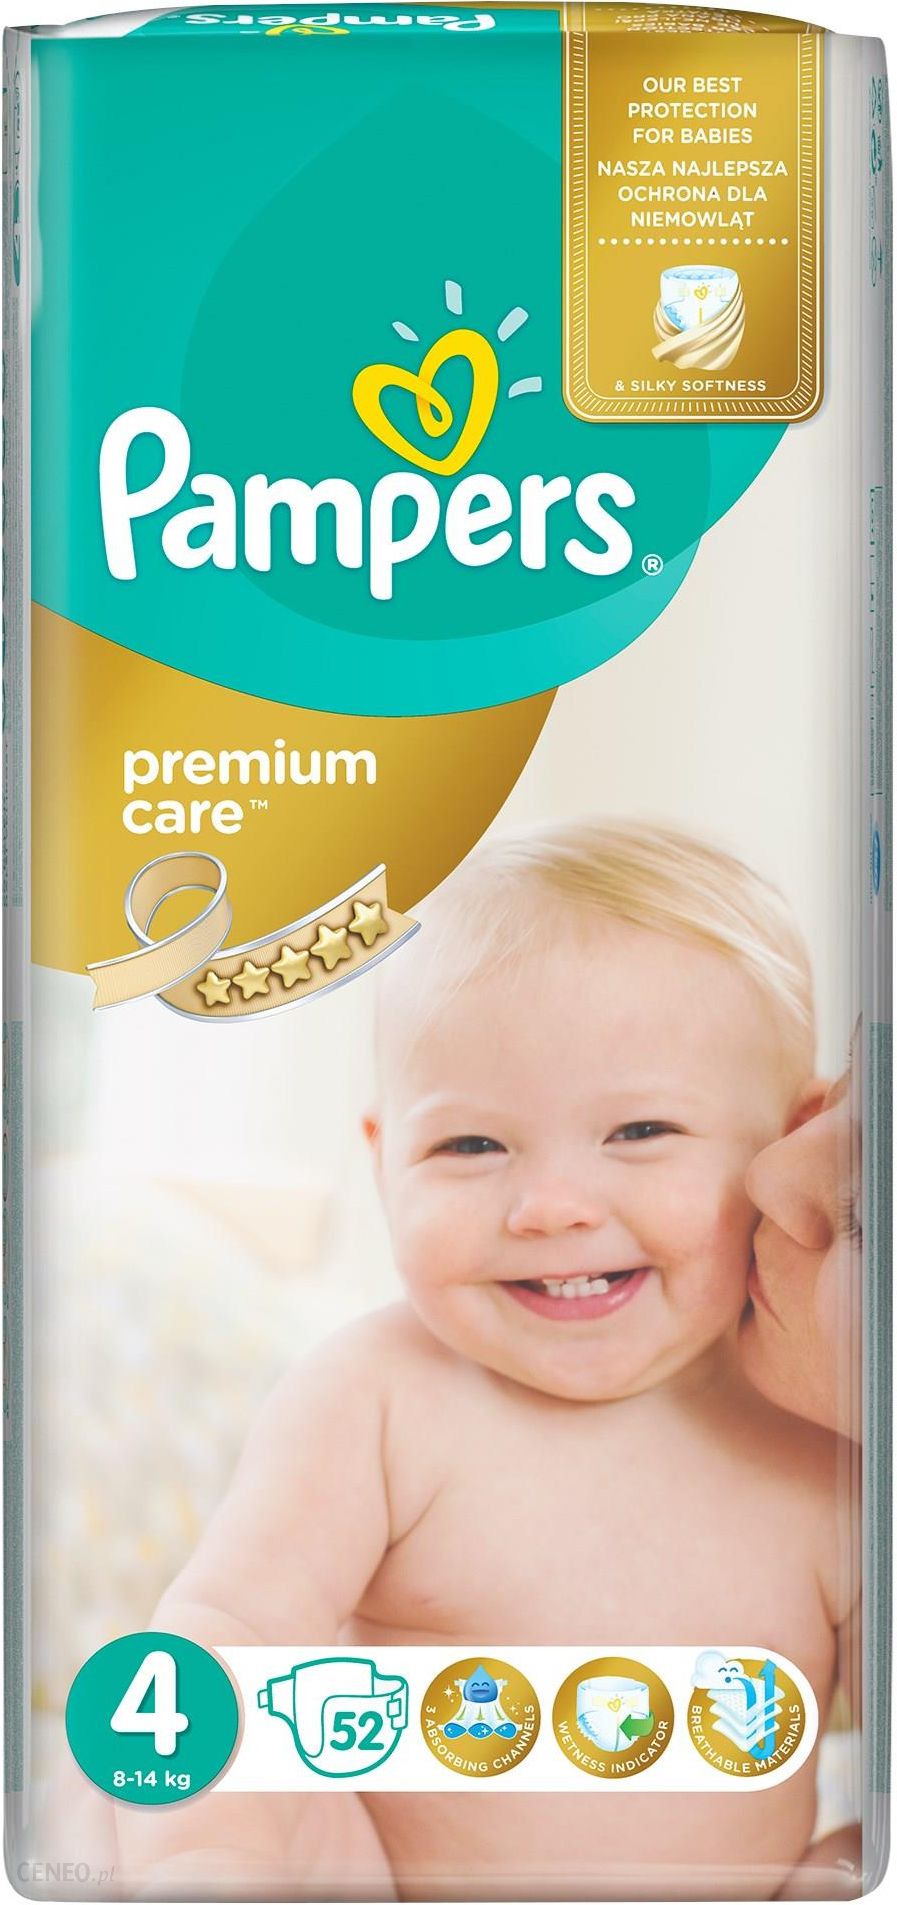 Pampers Pieluchy Premium Care rozmiar 4, 52 pieluszki